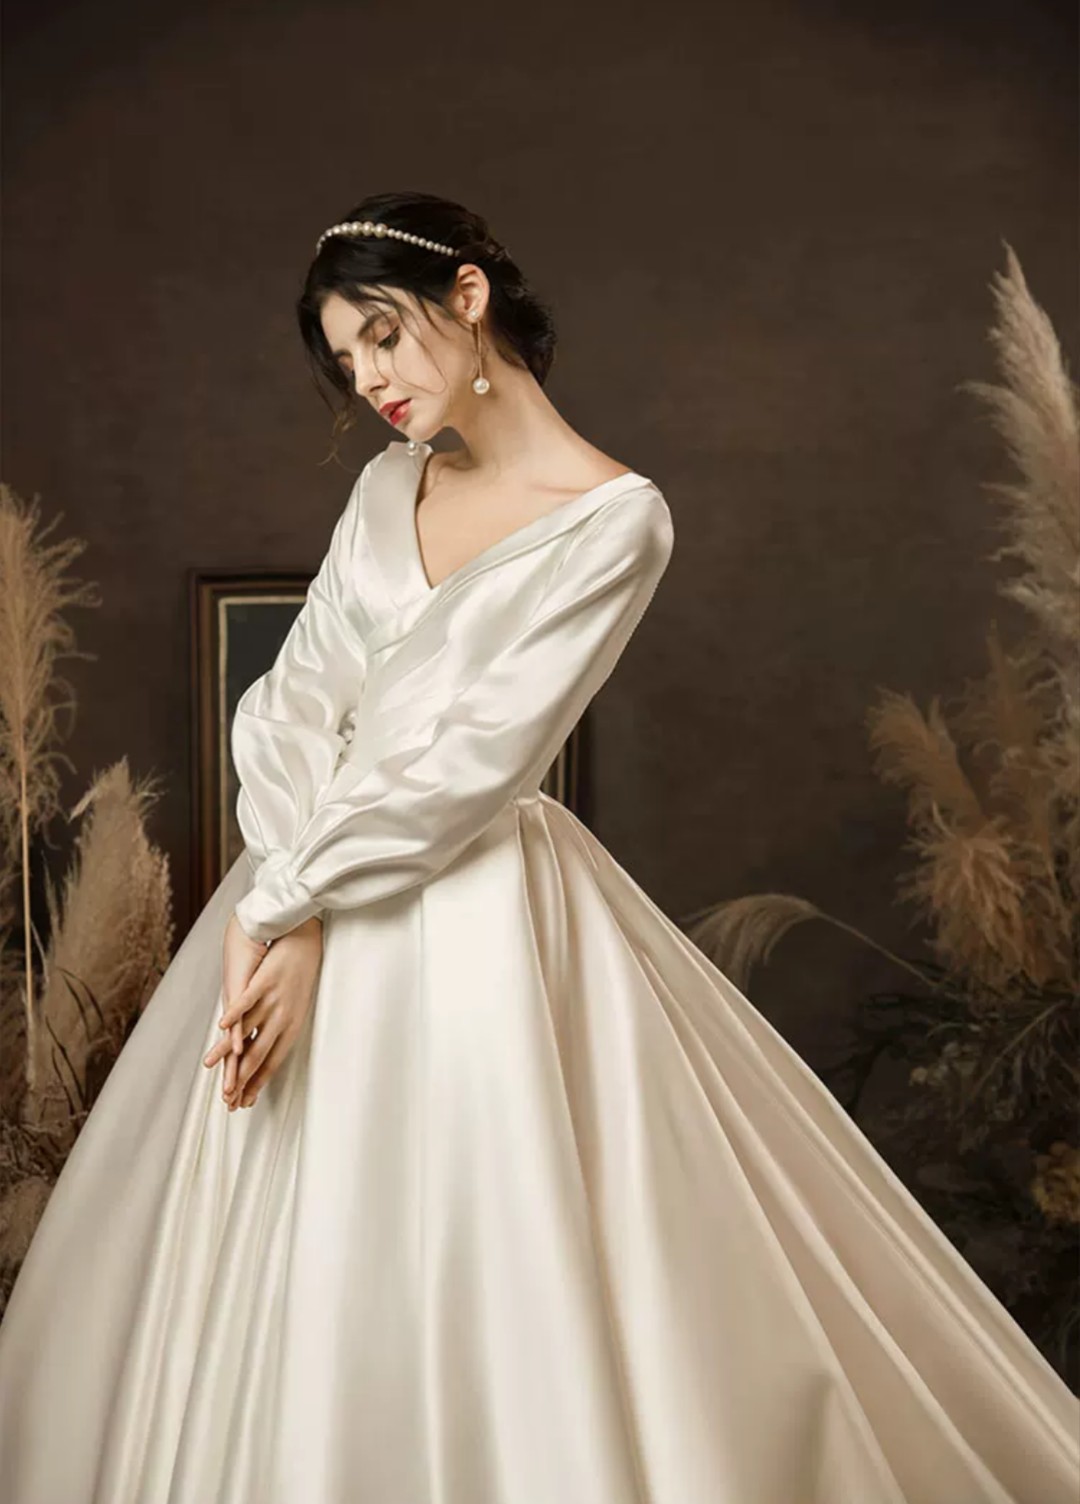 奢华性感系列来自意大利婚纱品牌Corona Borealis